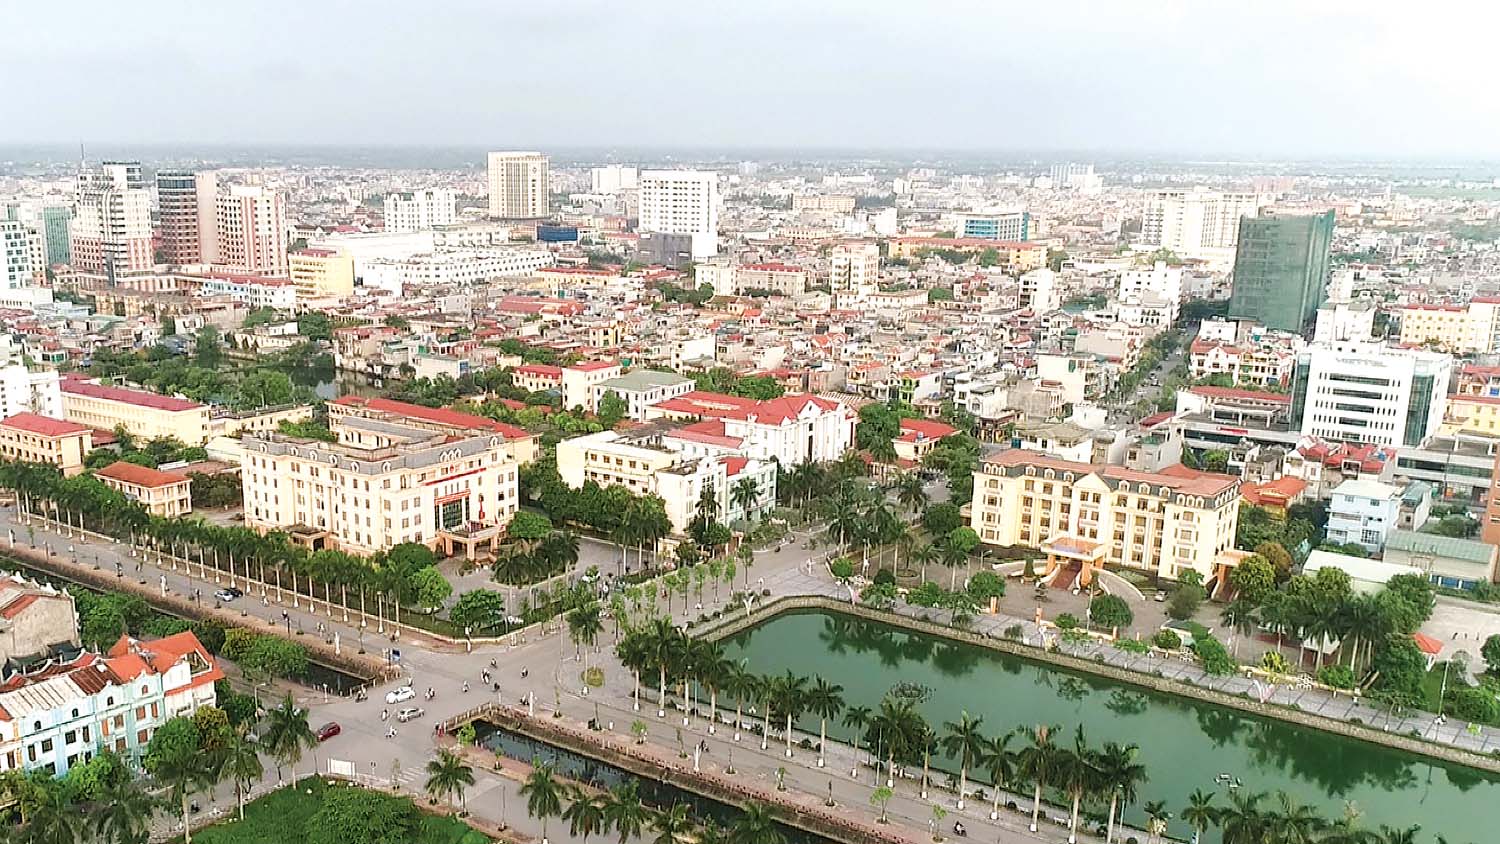 TP. Thái Bình sáng - xanh - sạch - đẹp, phấn đấu trở thành đô thị loại I vào năm 2025